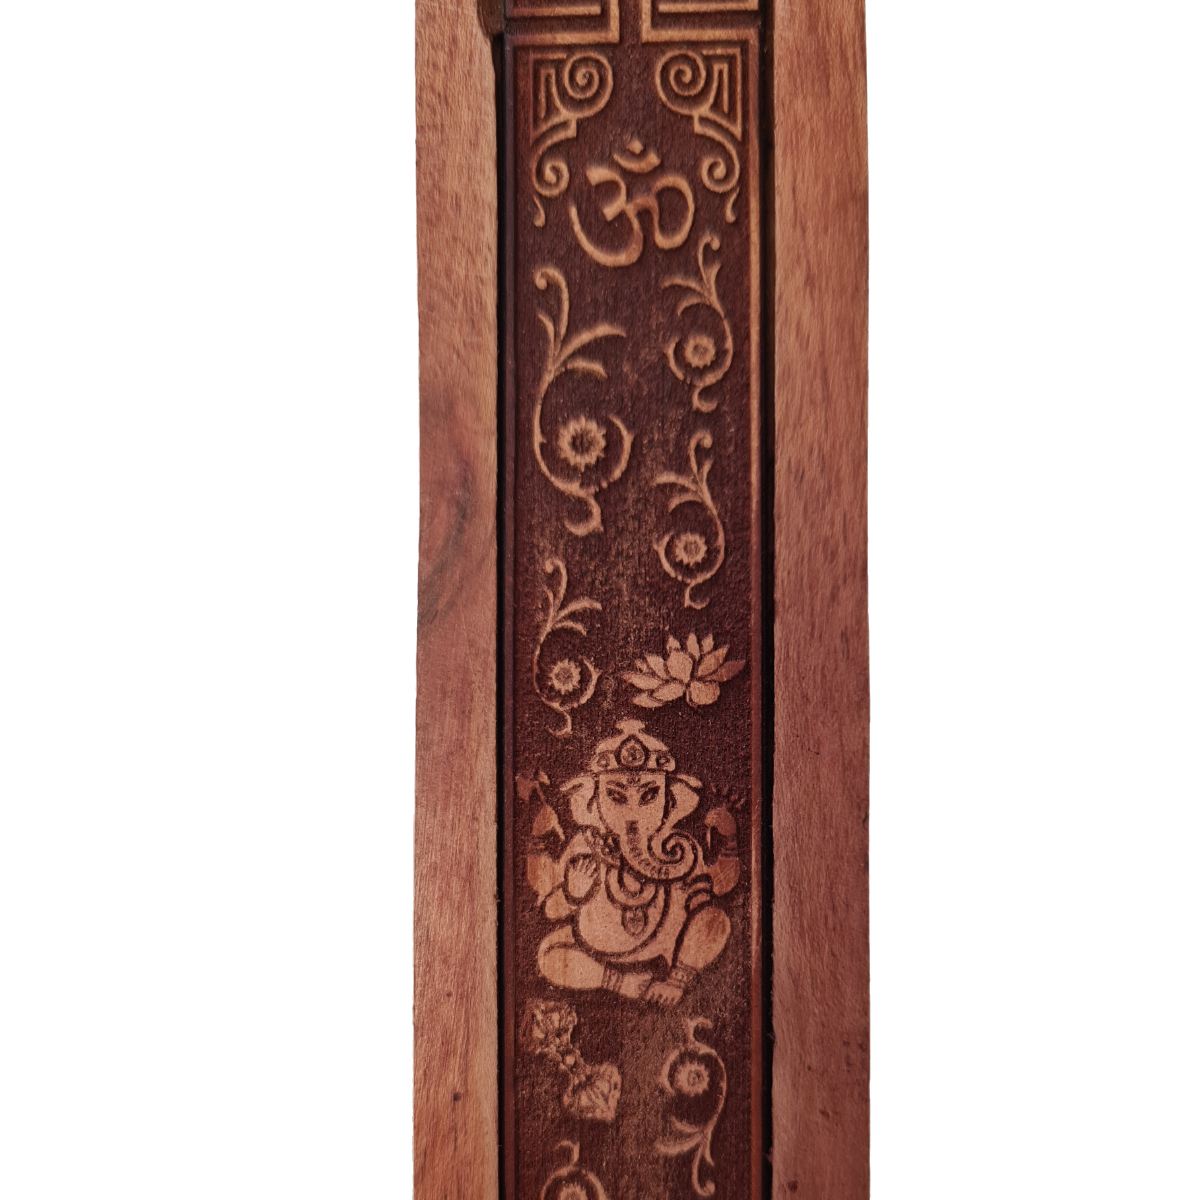 Incense stick holder - Ganesh in Engraved Wood